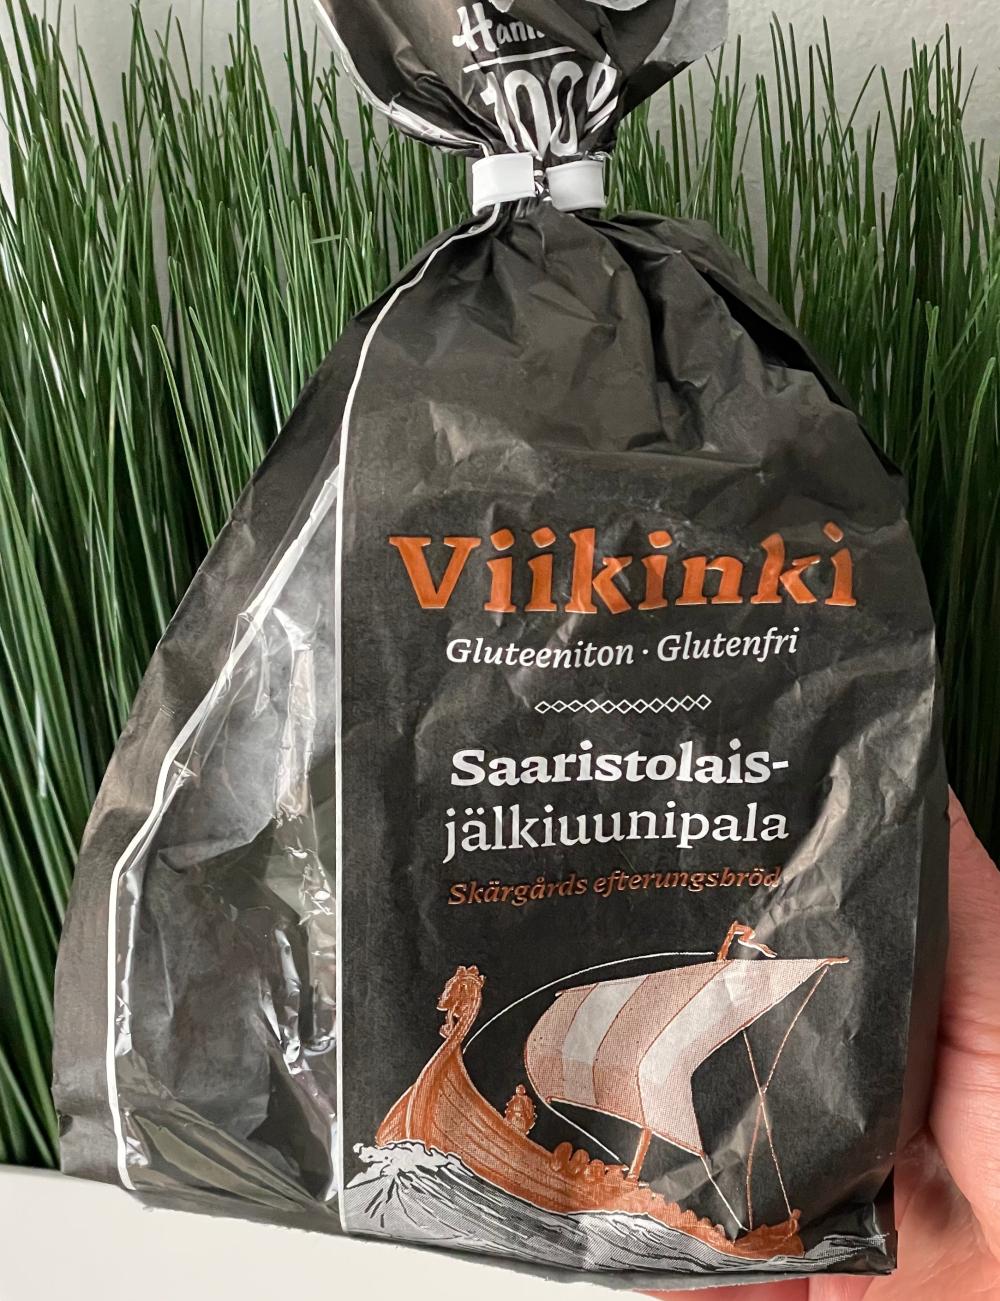 Hannun 100% Gluteeniton Viikinki gluteeniton saaristolaisjälkiuunipala 6 kpl / 160 g